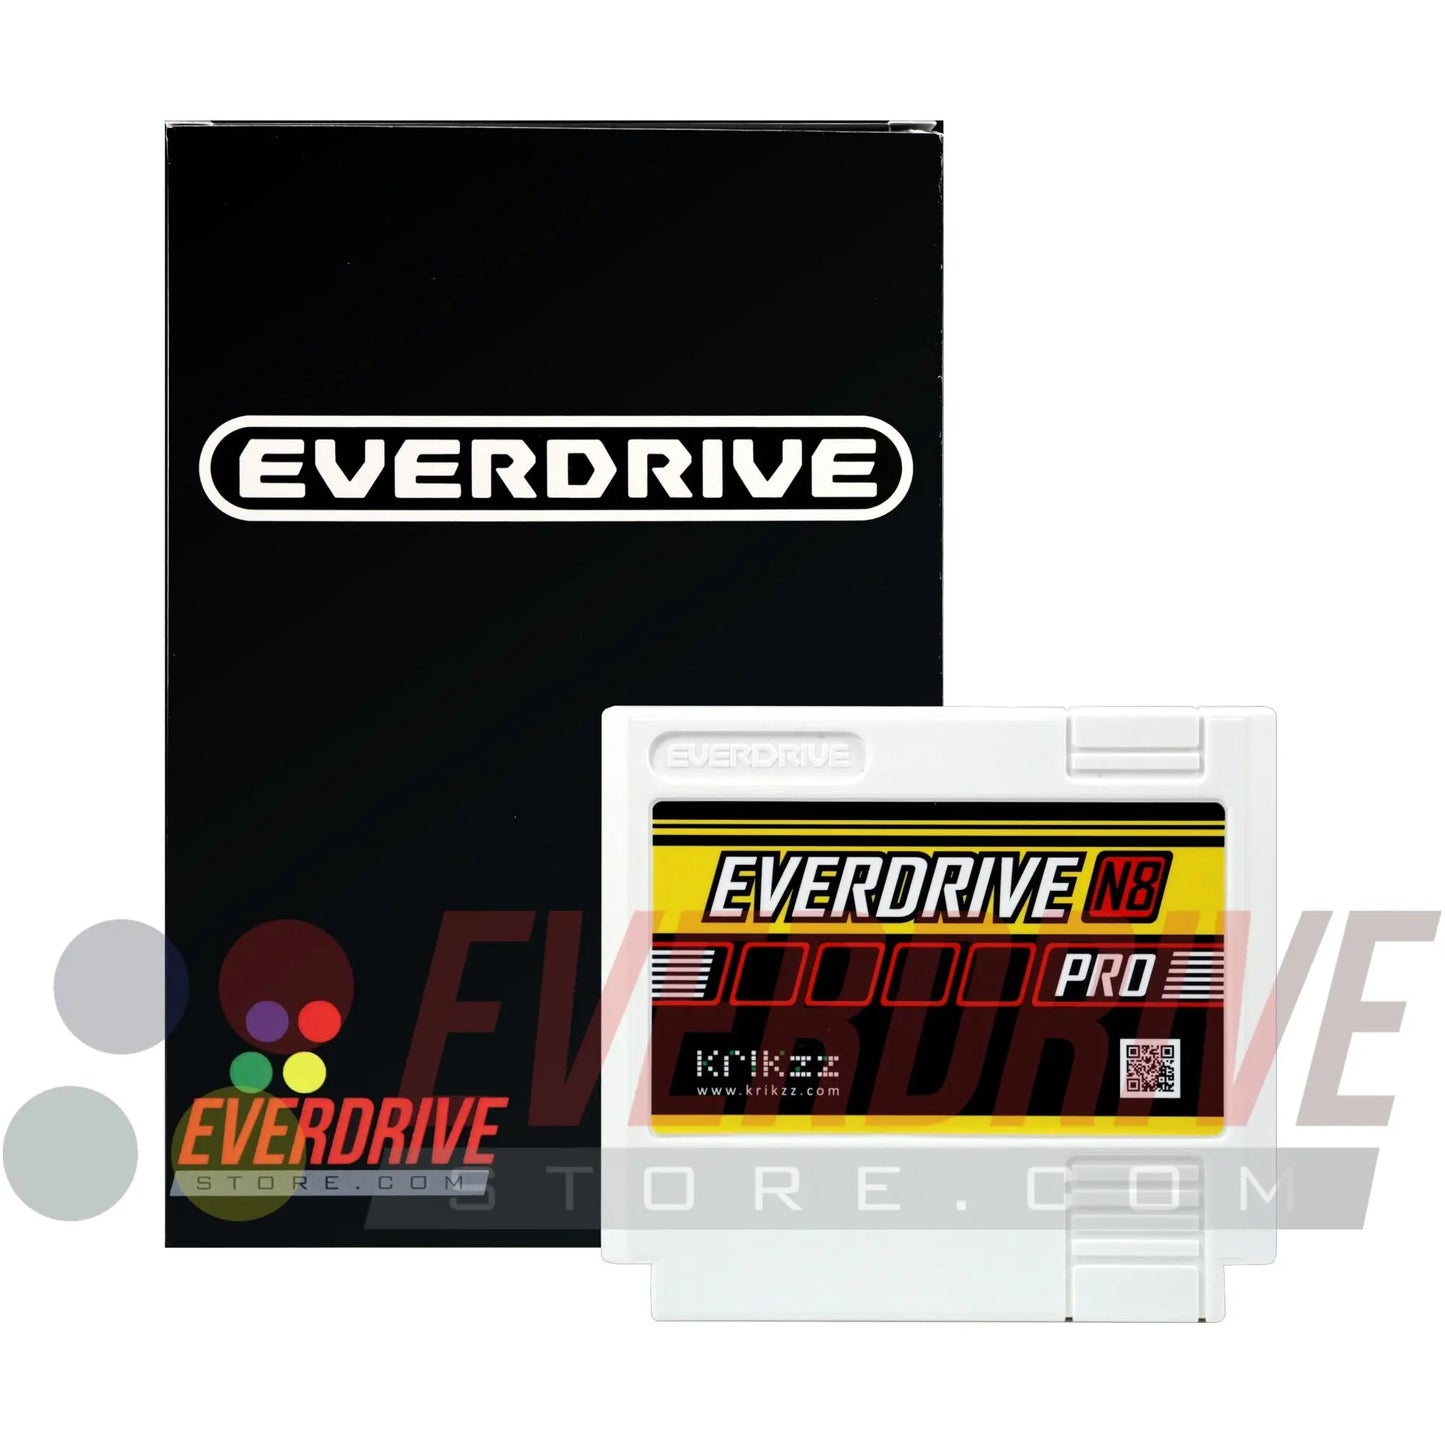 Everdrive N8 Famicom PRO - White Krikzz